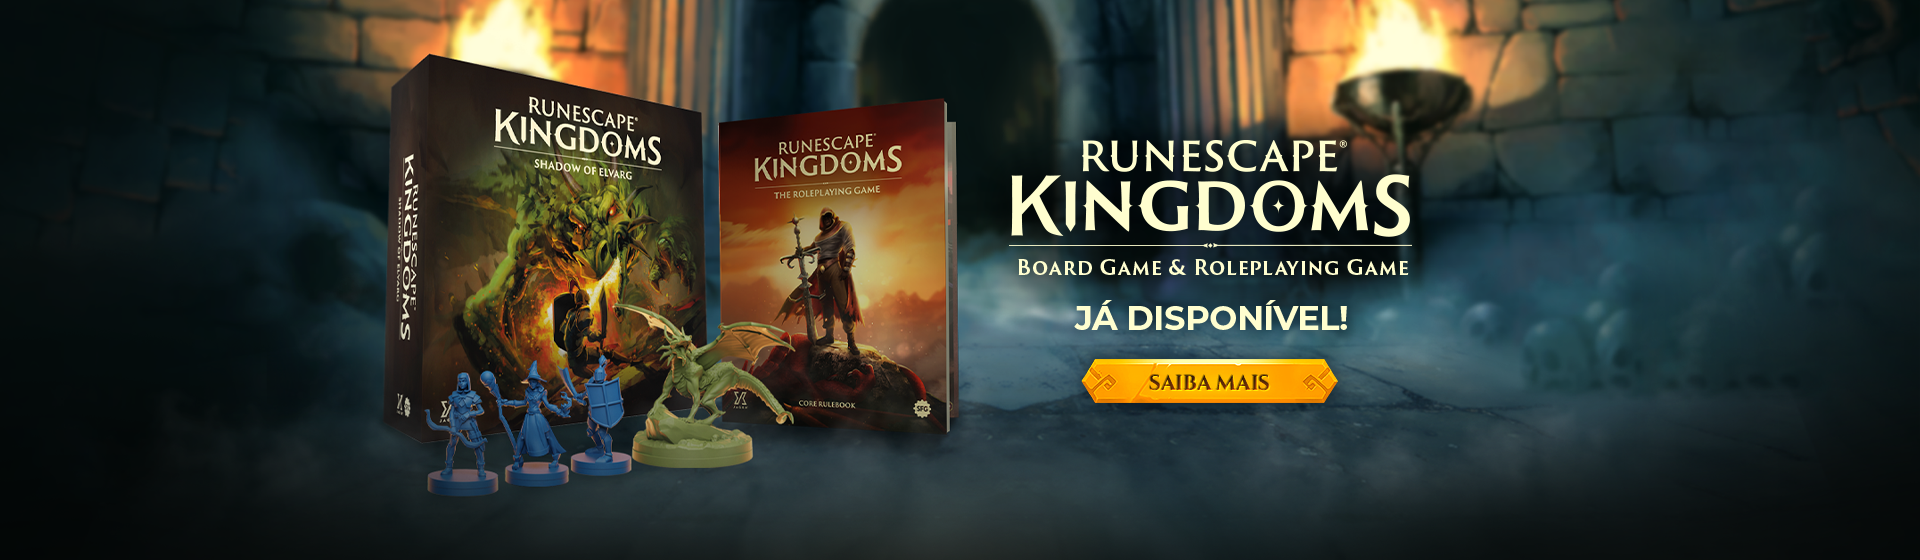 RuneScape Kingdoms - Já disponível! 